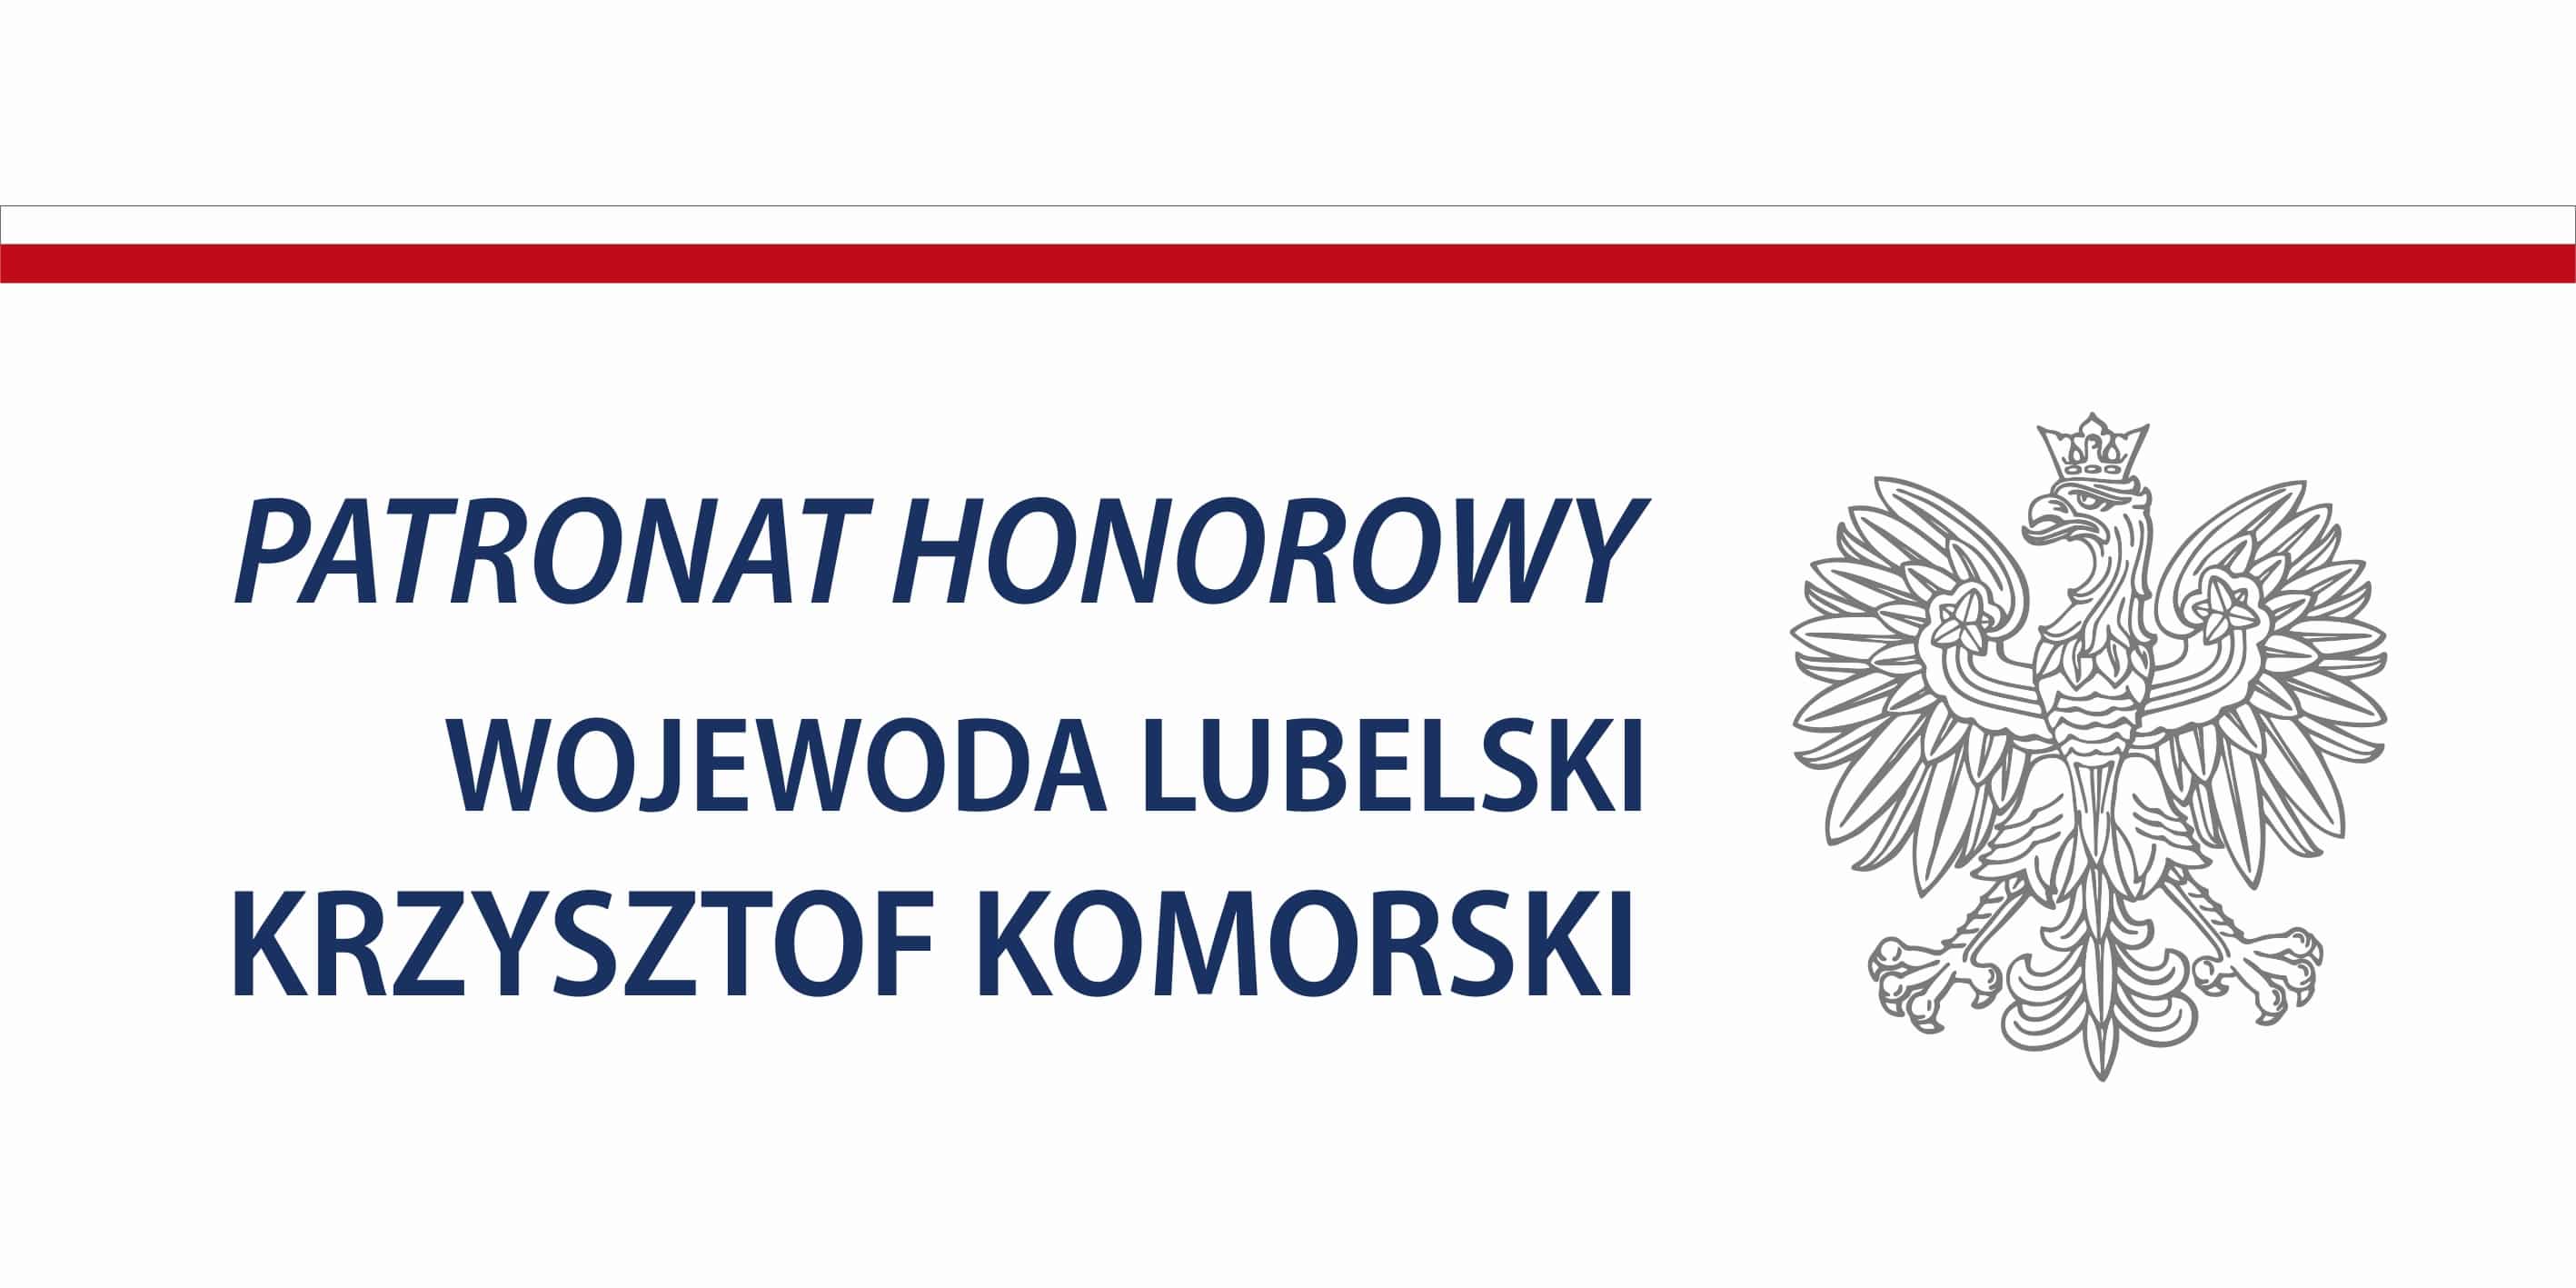 Patronat honorowy Wojewoda Lub. Krzysztof Komorski